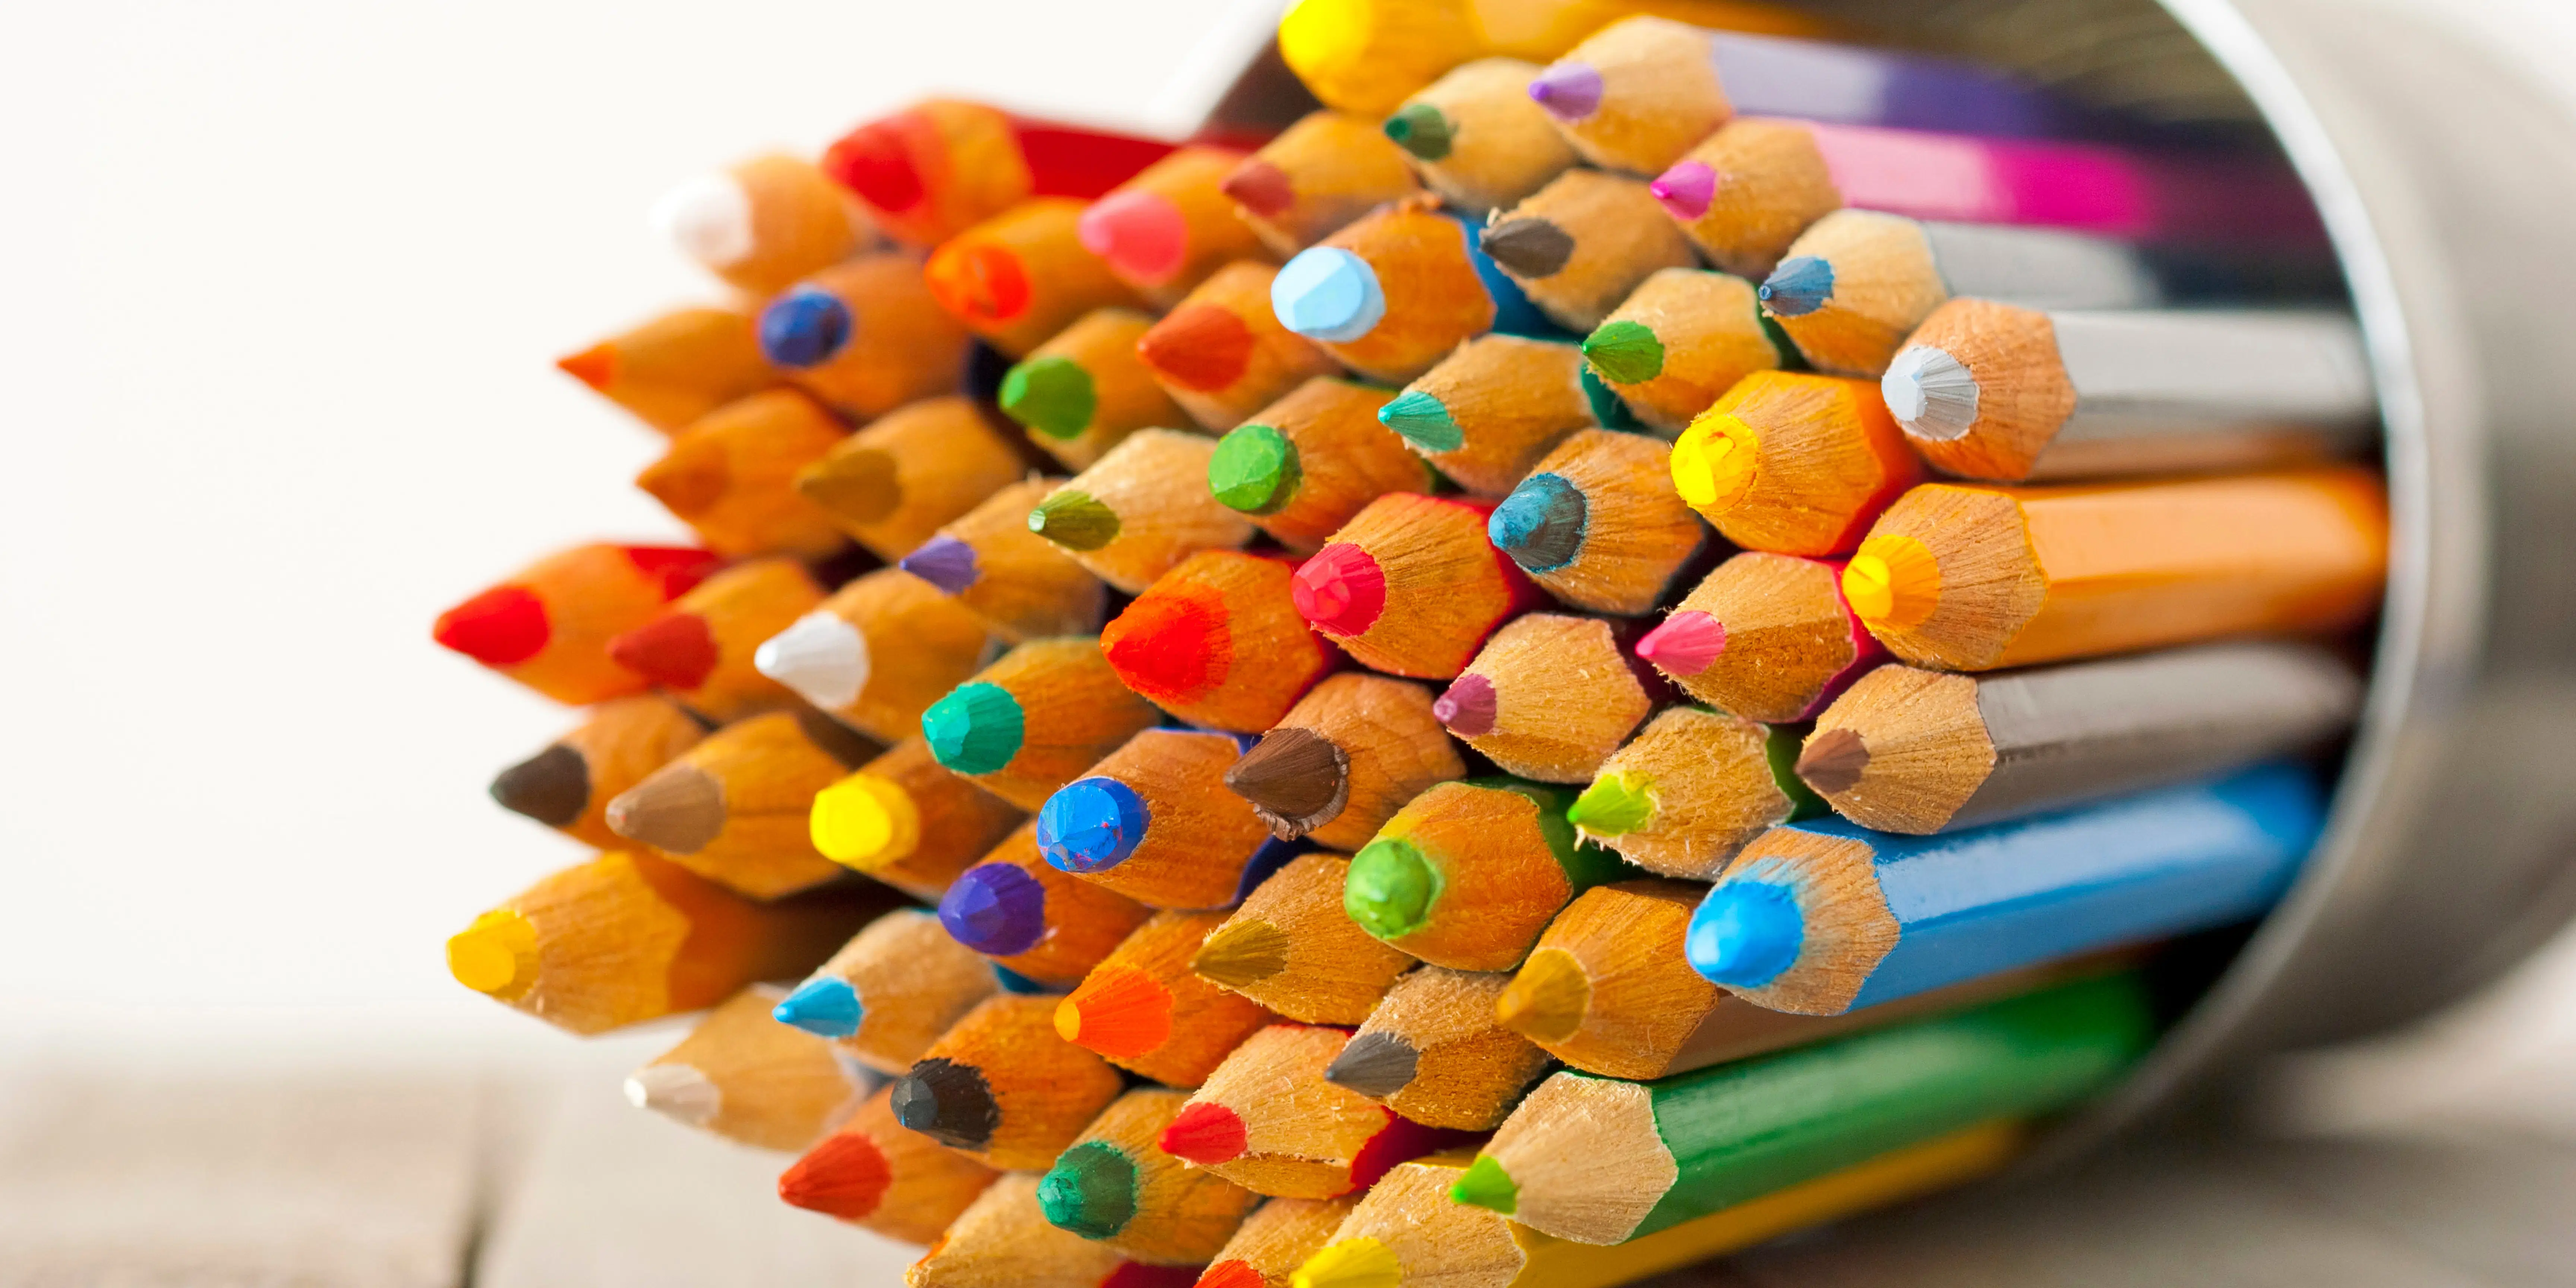 https://justcreative.com/wp-content/uploads/2021/09/Best-color-pencils-.png.webp